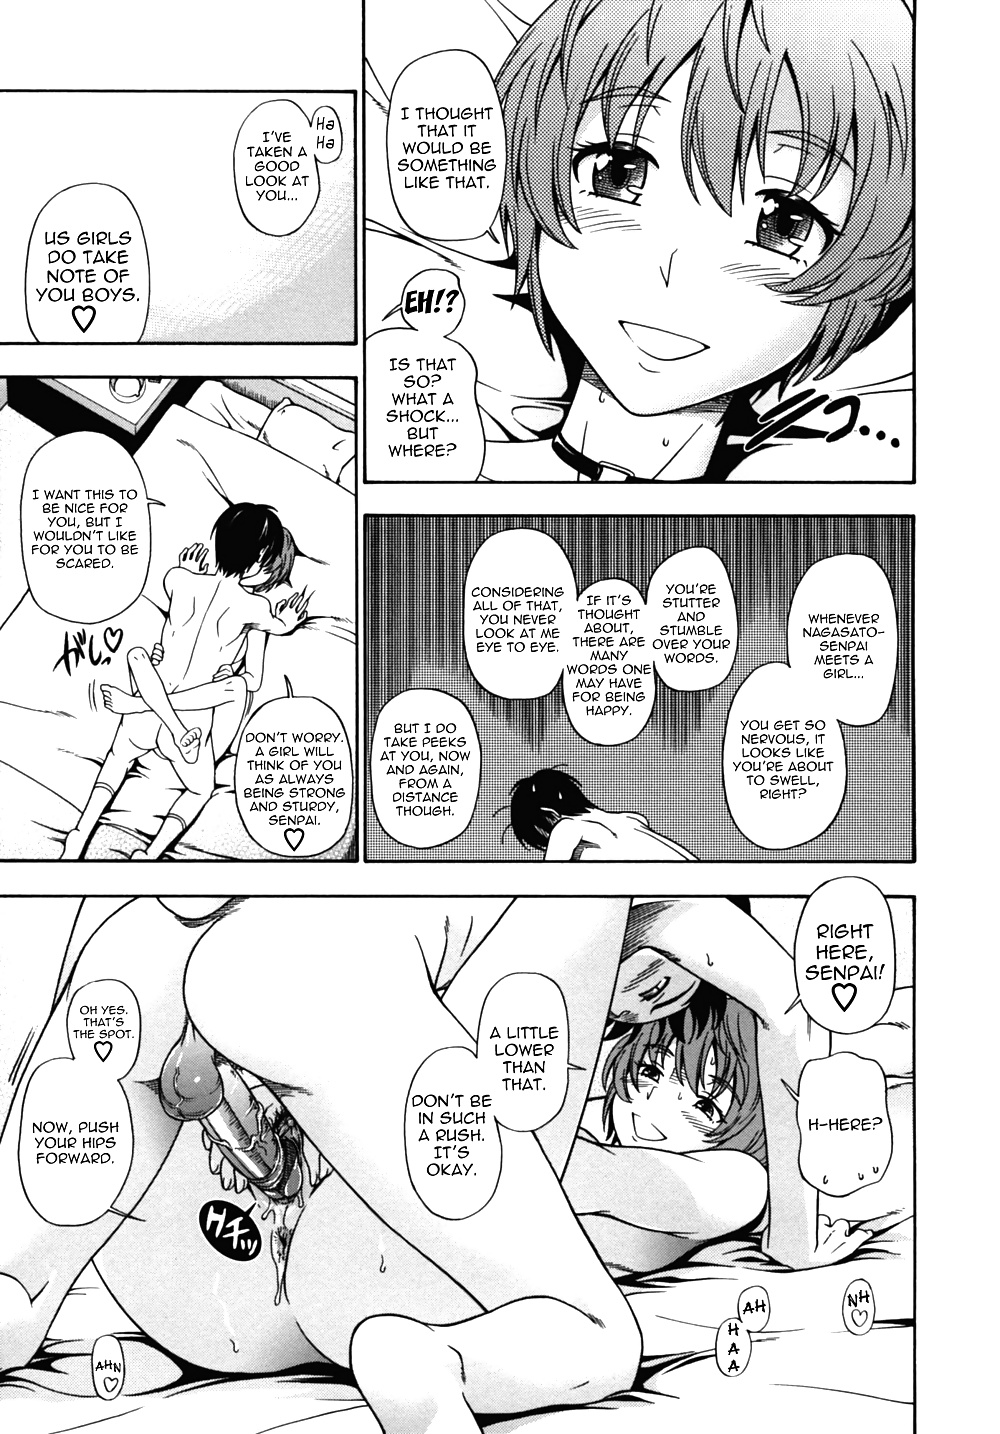 (fumetto hentai) fukudada opere erotiche #4
 #32228518